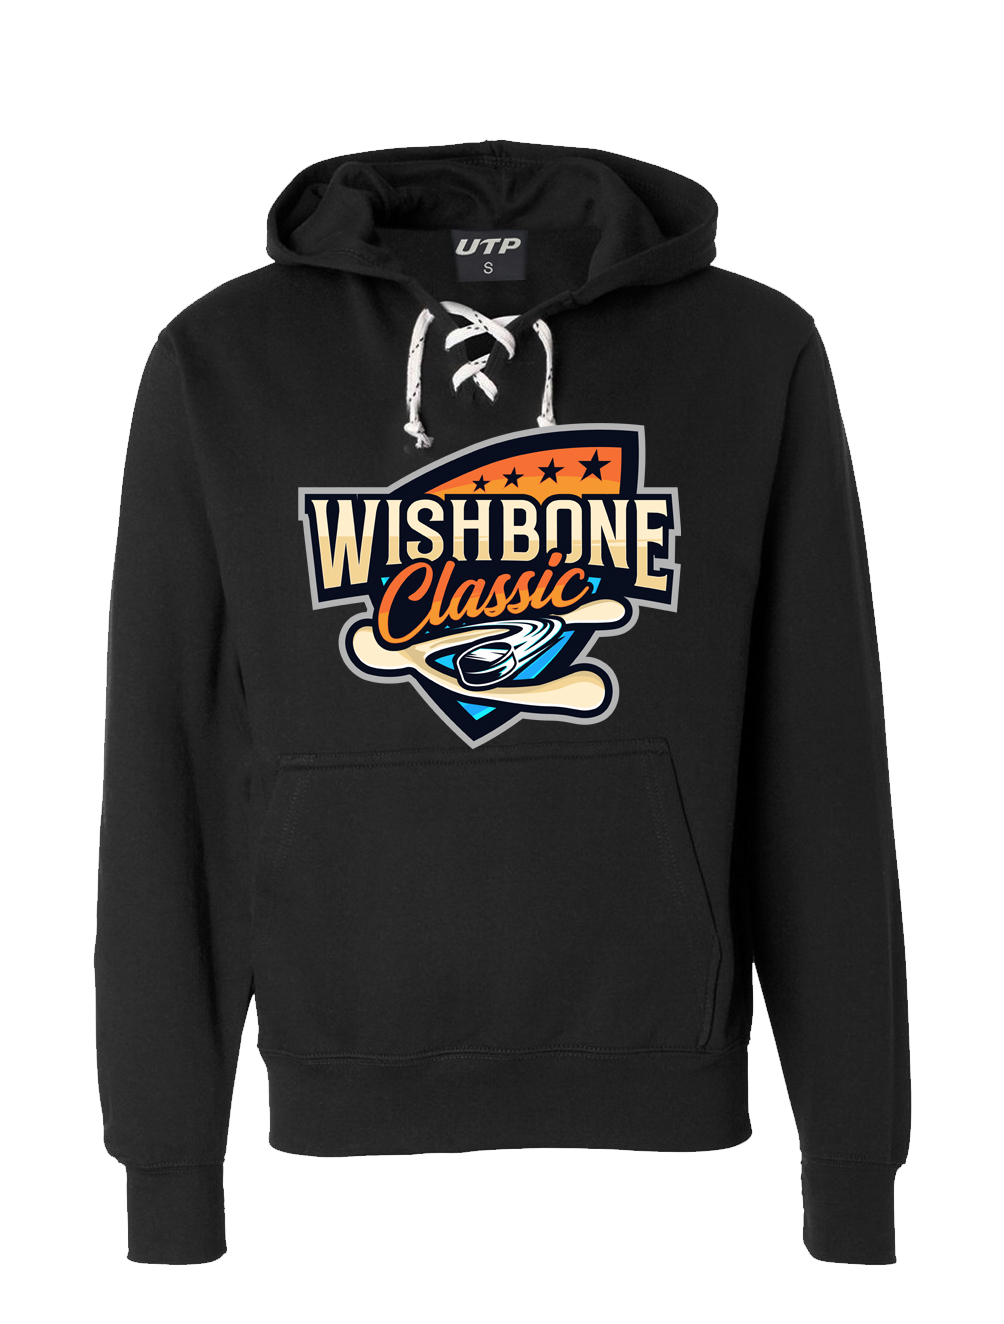 Wishbone Classic Hoodie (Black)